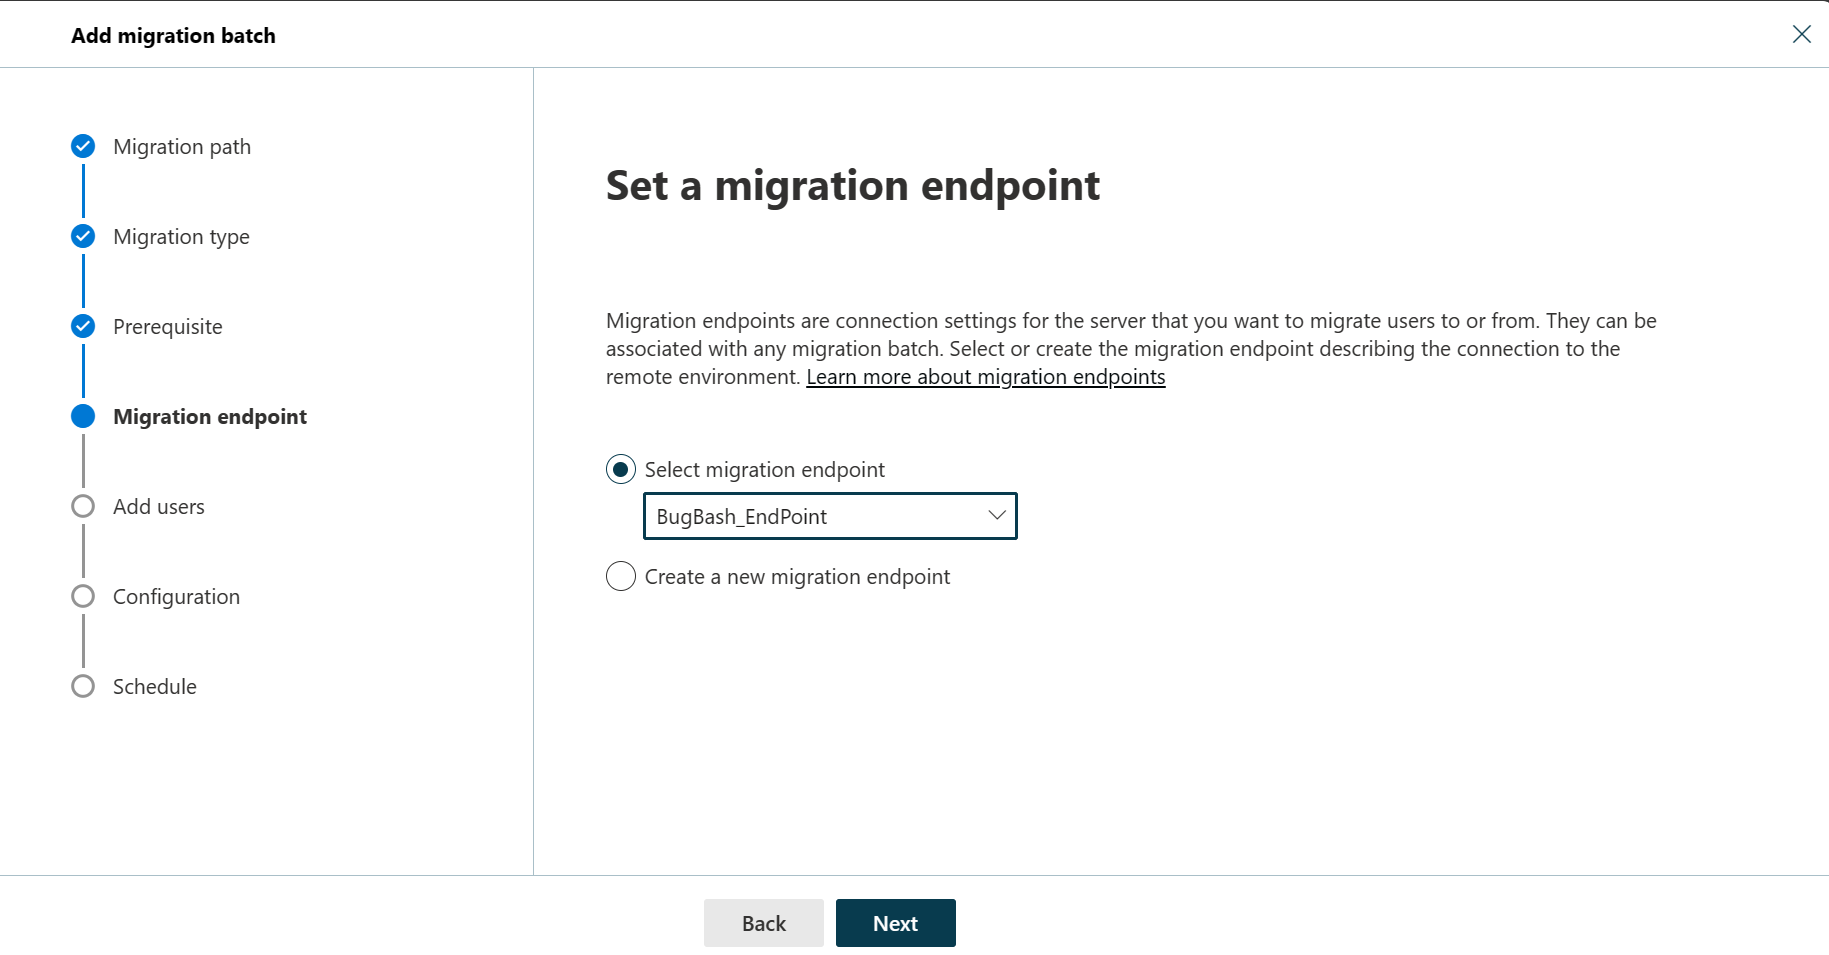 Capture d’écran de la boîte de dialogue Définir le point de terminaison de migration dans laquelle l’utilisateur peut sélectionner le point de terminaison de migration ou créer un nouveau point de terminaison de migration, avec l’option Sélectionner un point de terminaison de migration sélectionnée.